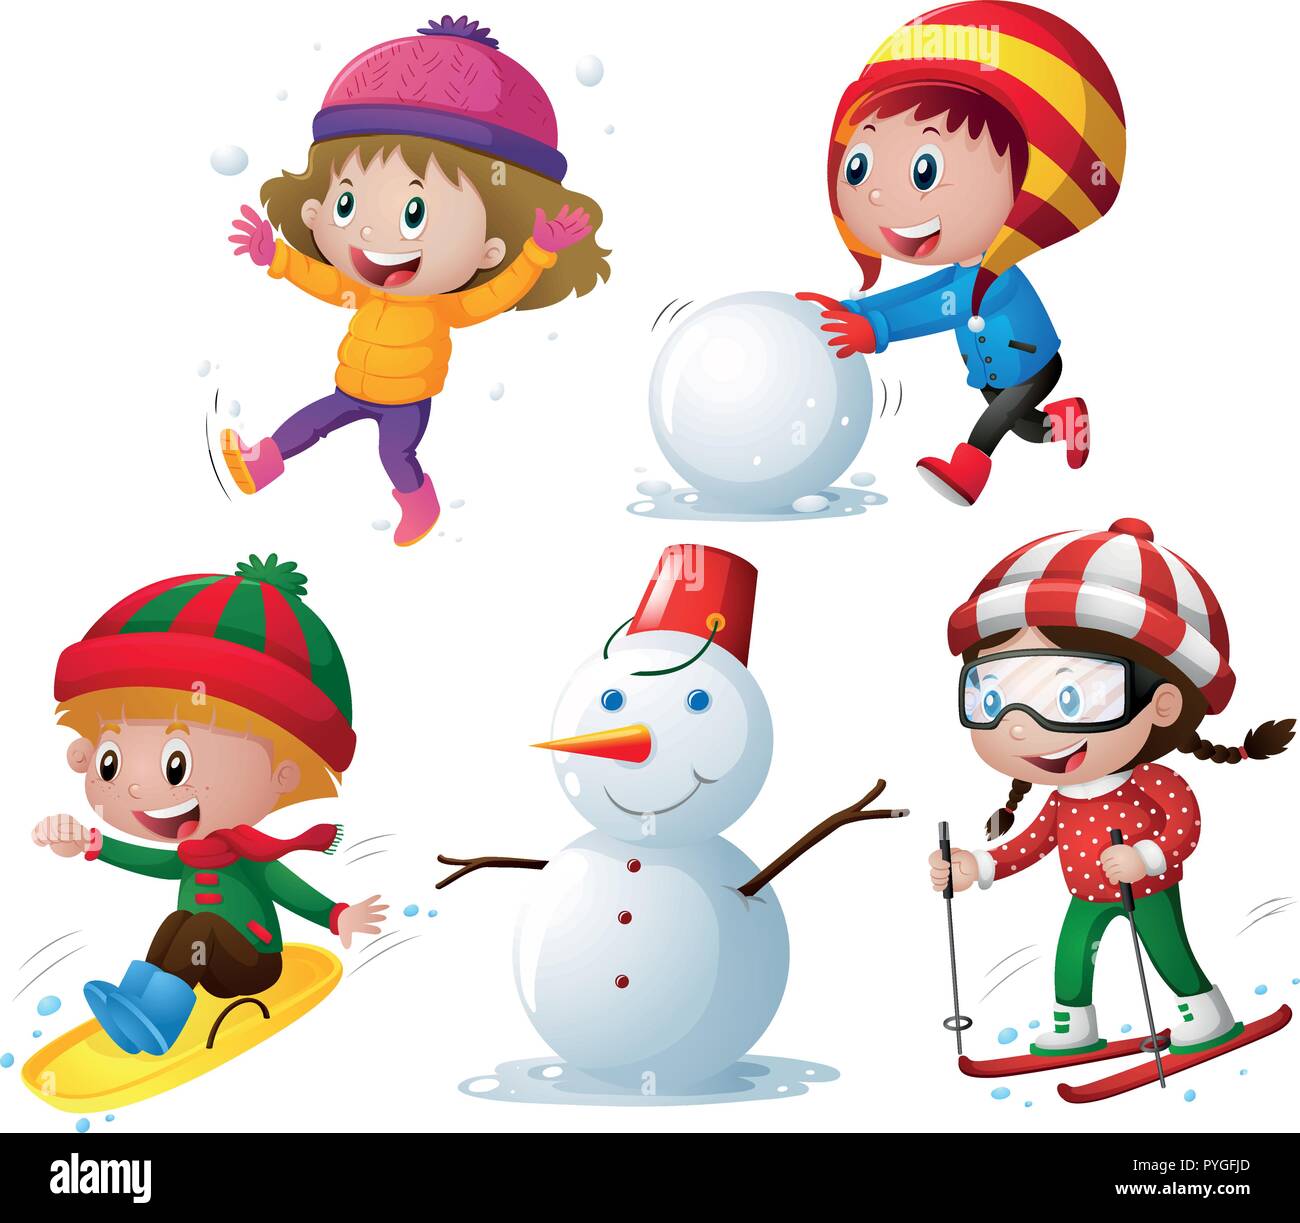 Les enfants dans des vêtements d'hiver à l'illustration de la neige Illustration de Vecteur